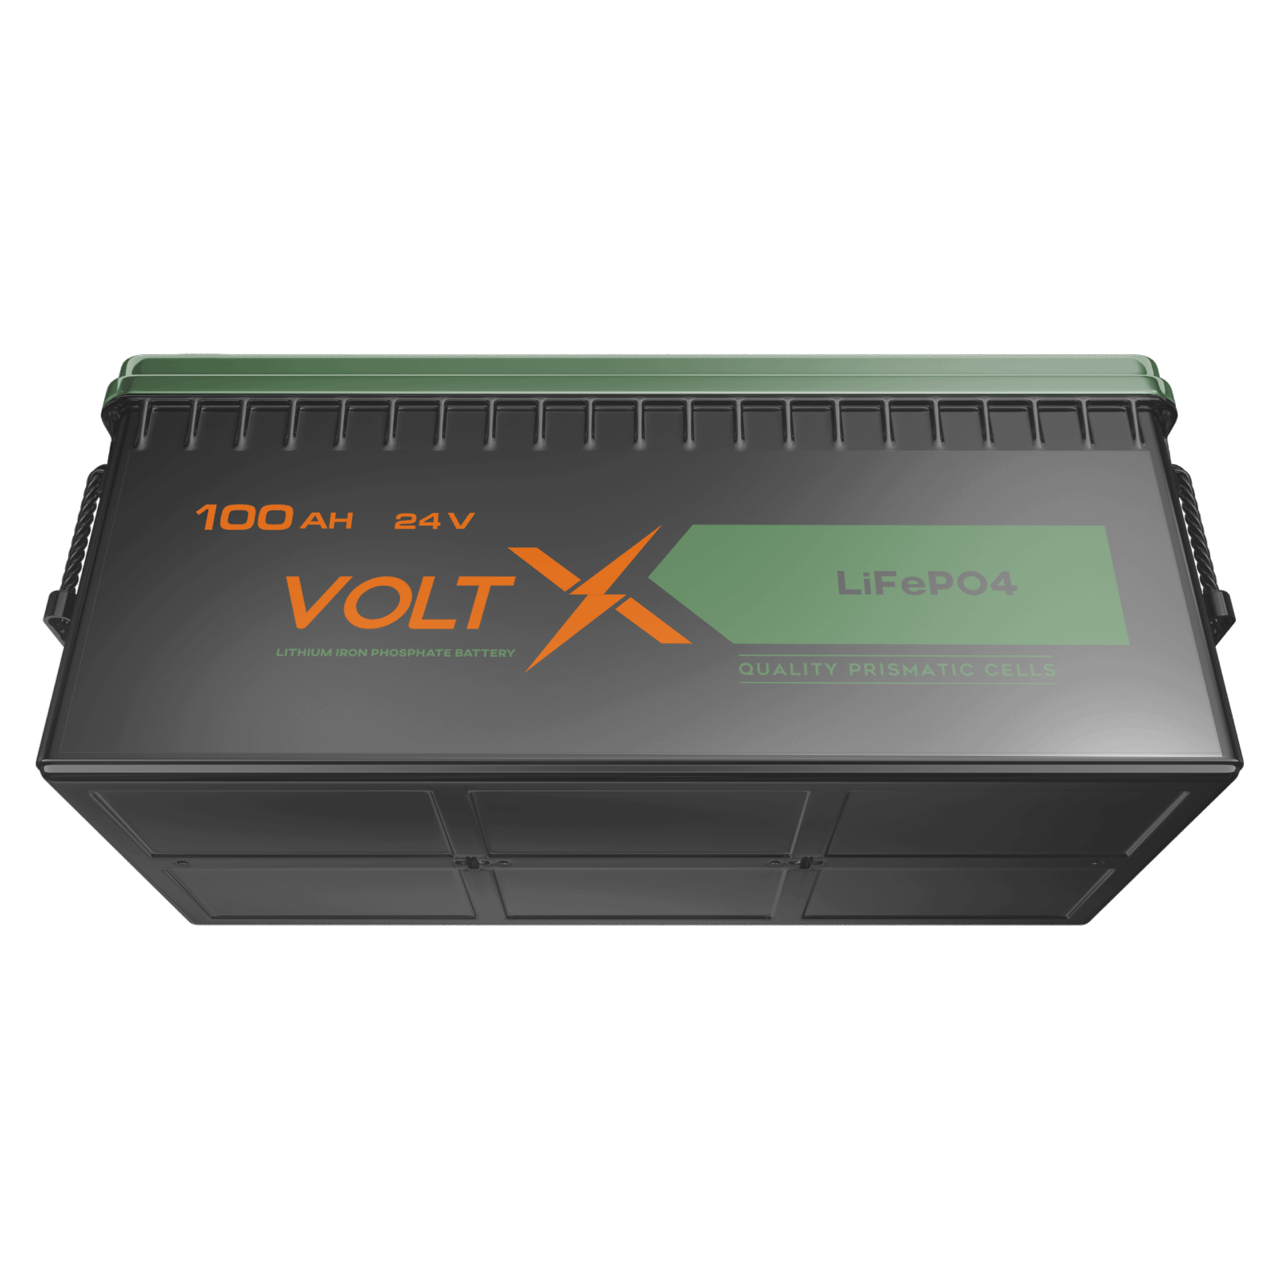 VoltX 24V 100Ah Basic